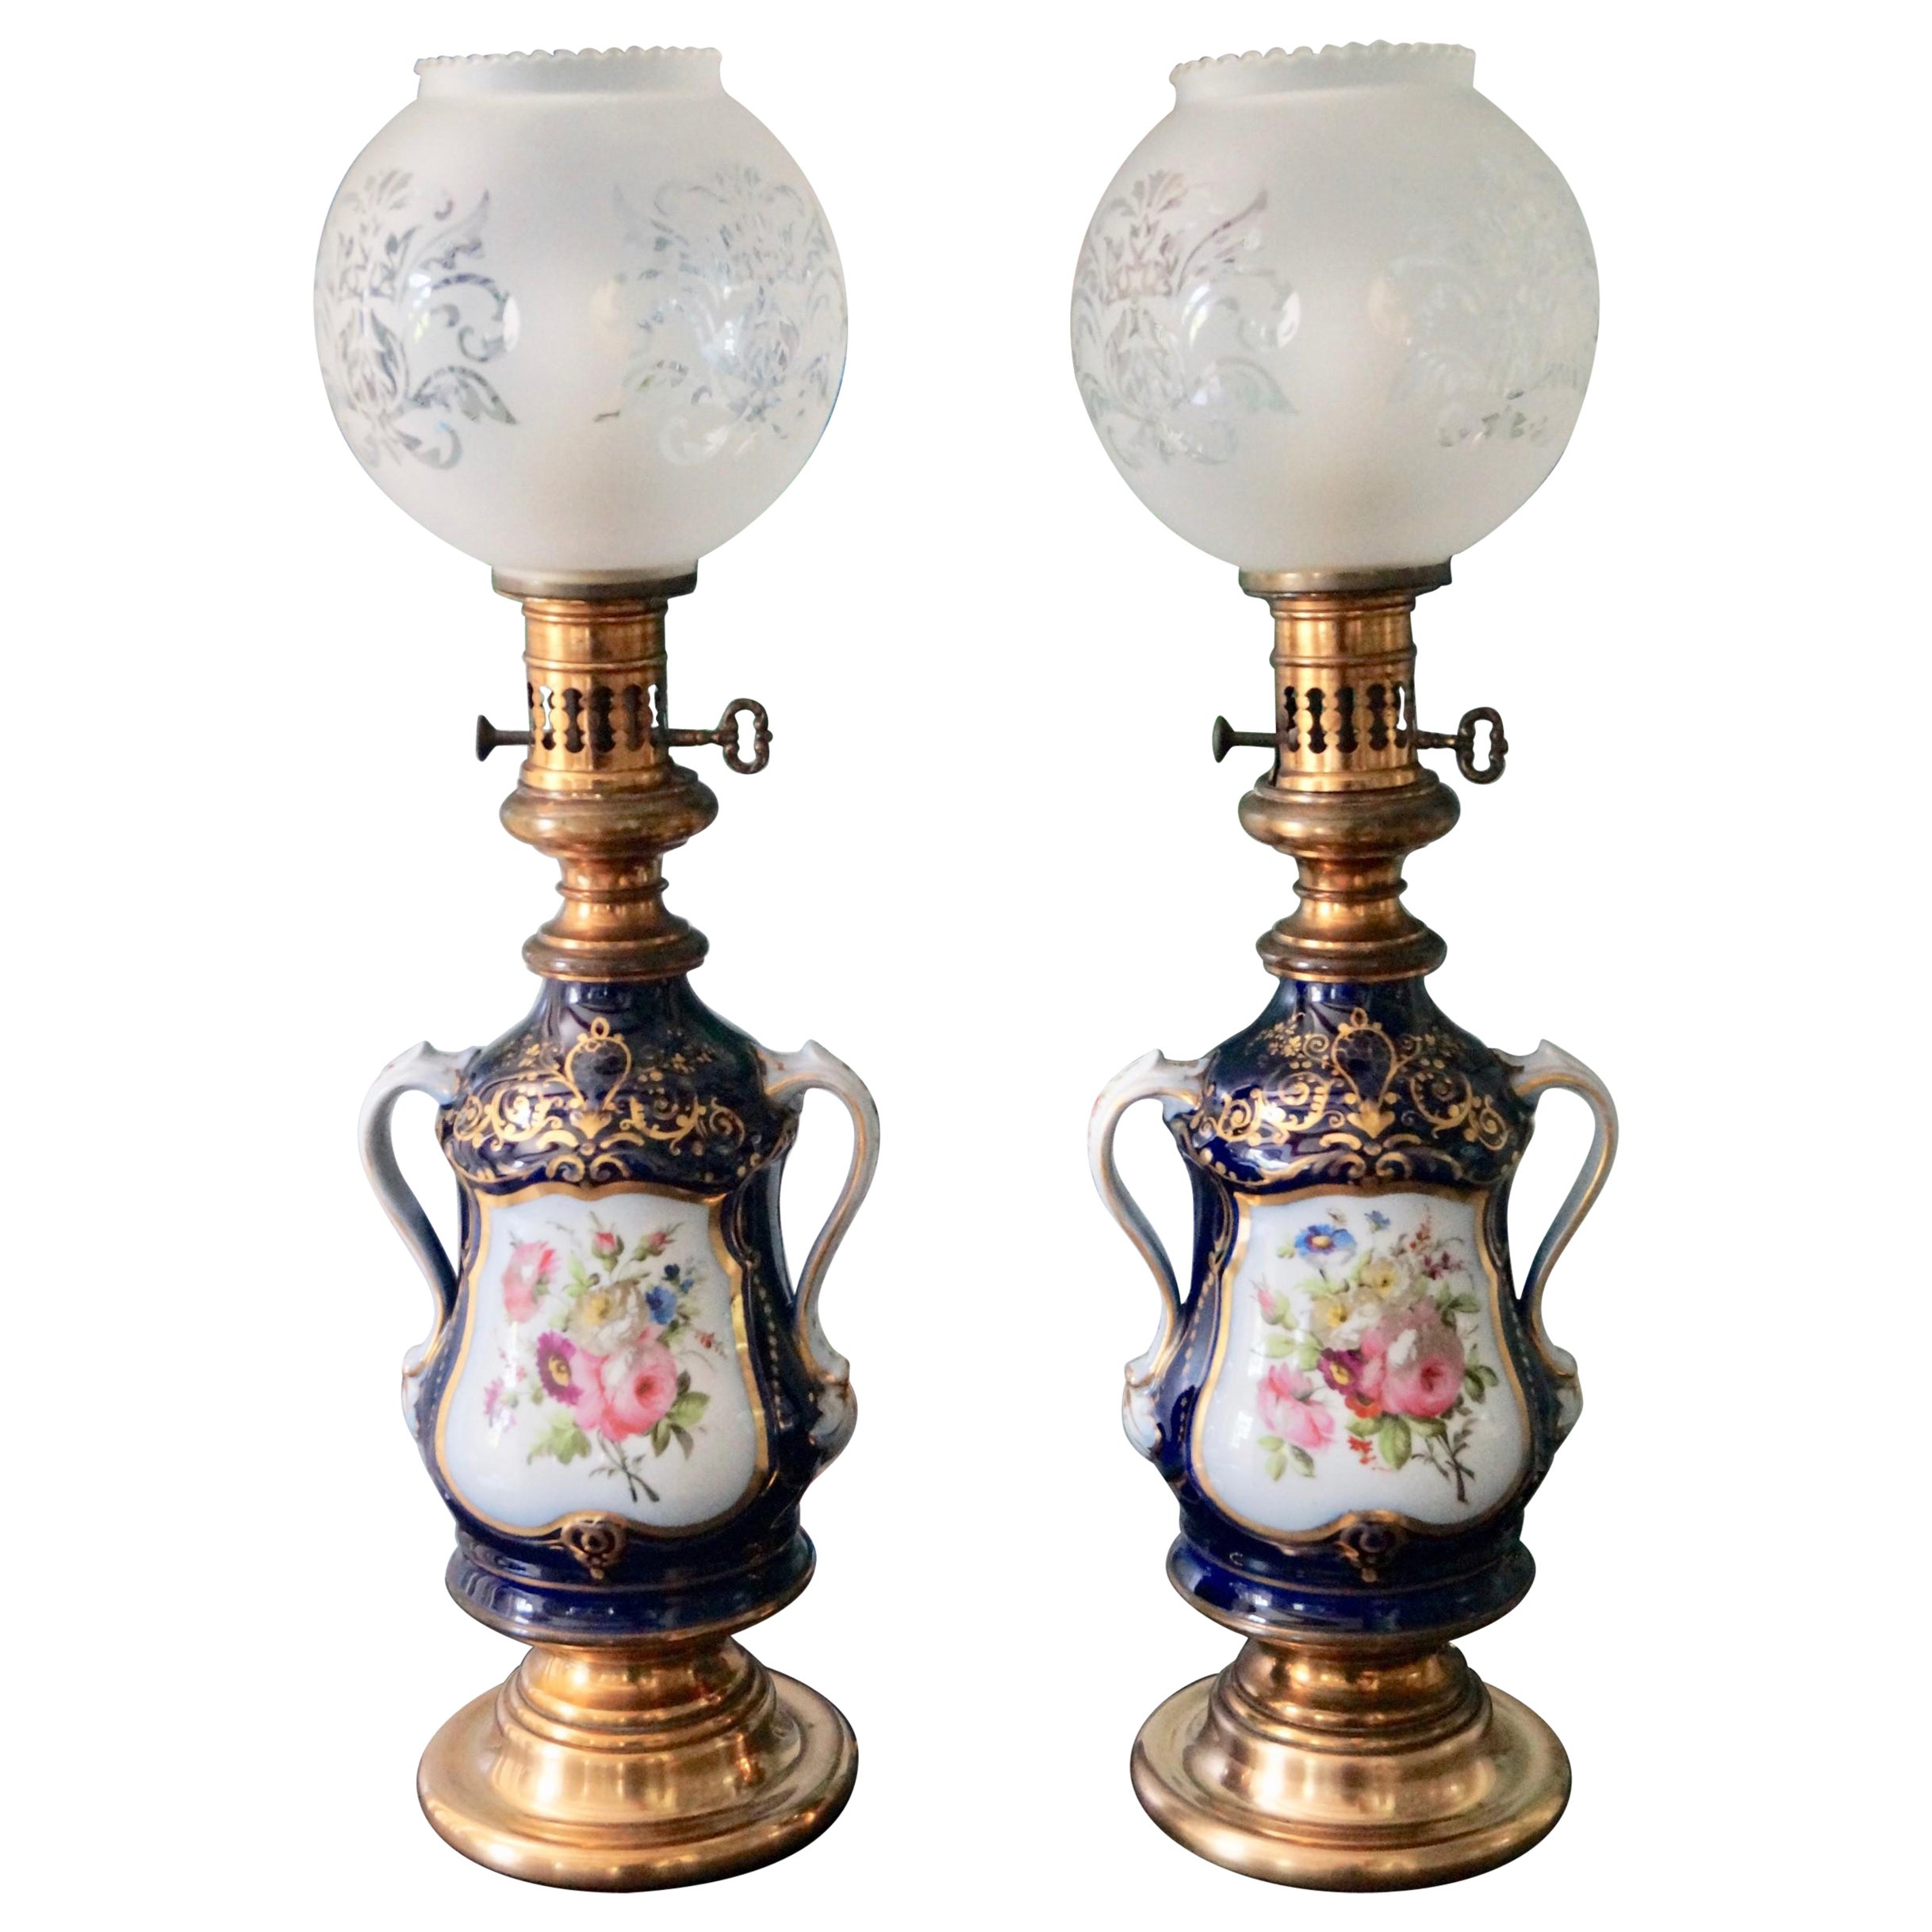 Schöne antike Old Paris Porzellan Tischlampen Öllampen Franc 1880s